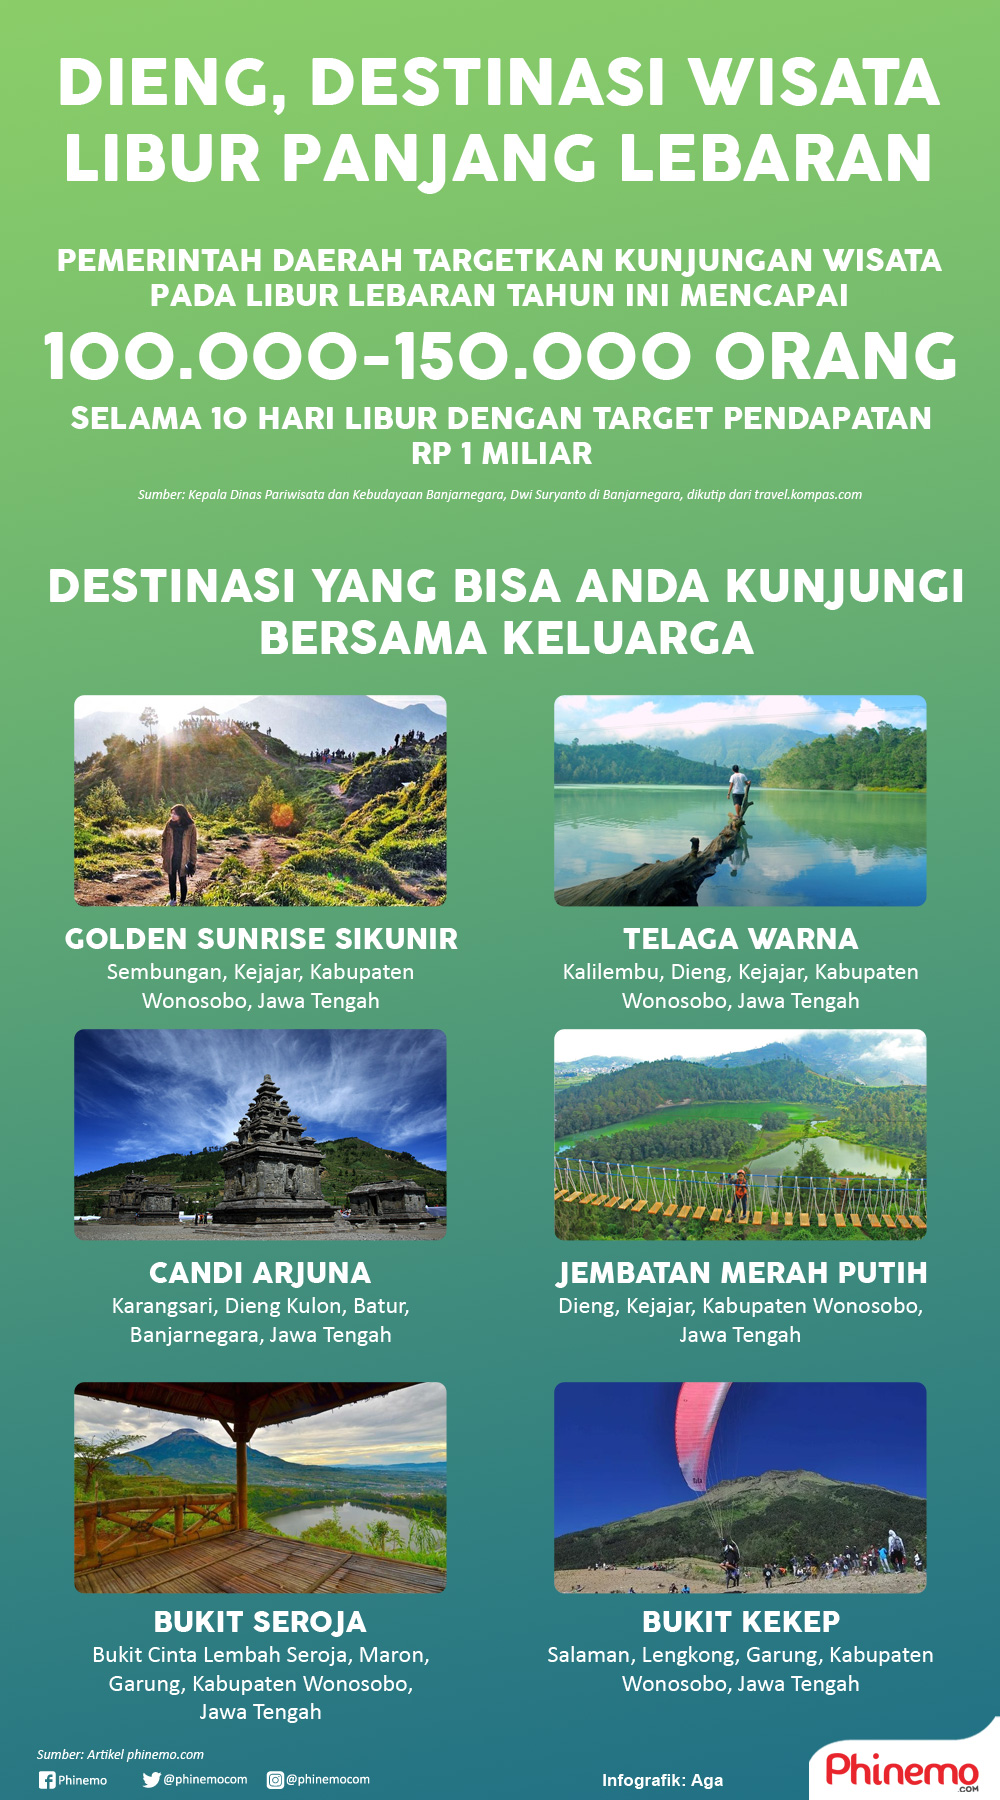 Infografik Dieng, Destinasi Wisata Menyejukan di Libur Lebaran. 